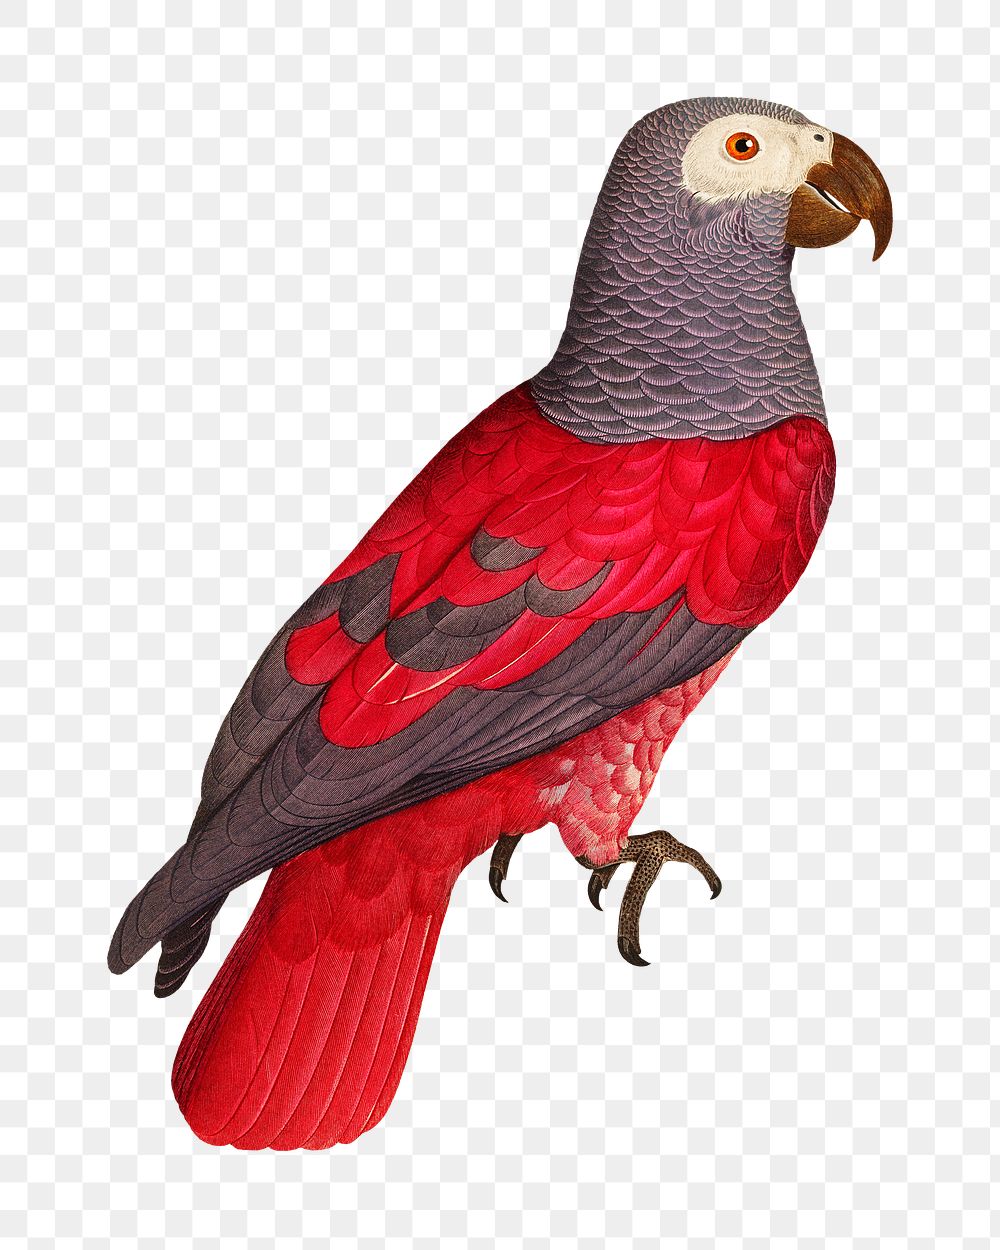 Grey parrot png bird sticker, vintage animal illustration, transparent background